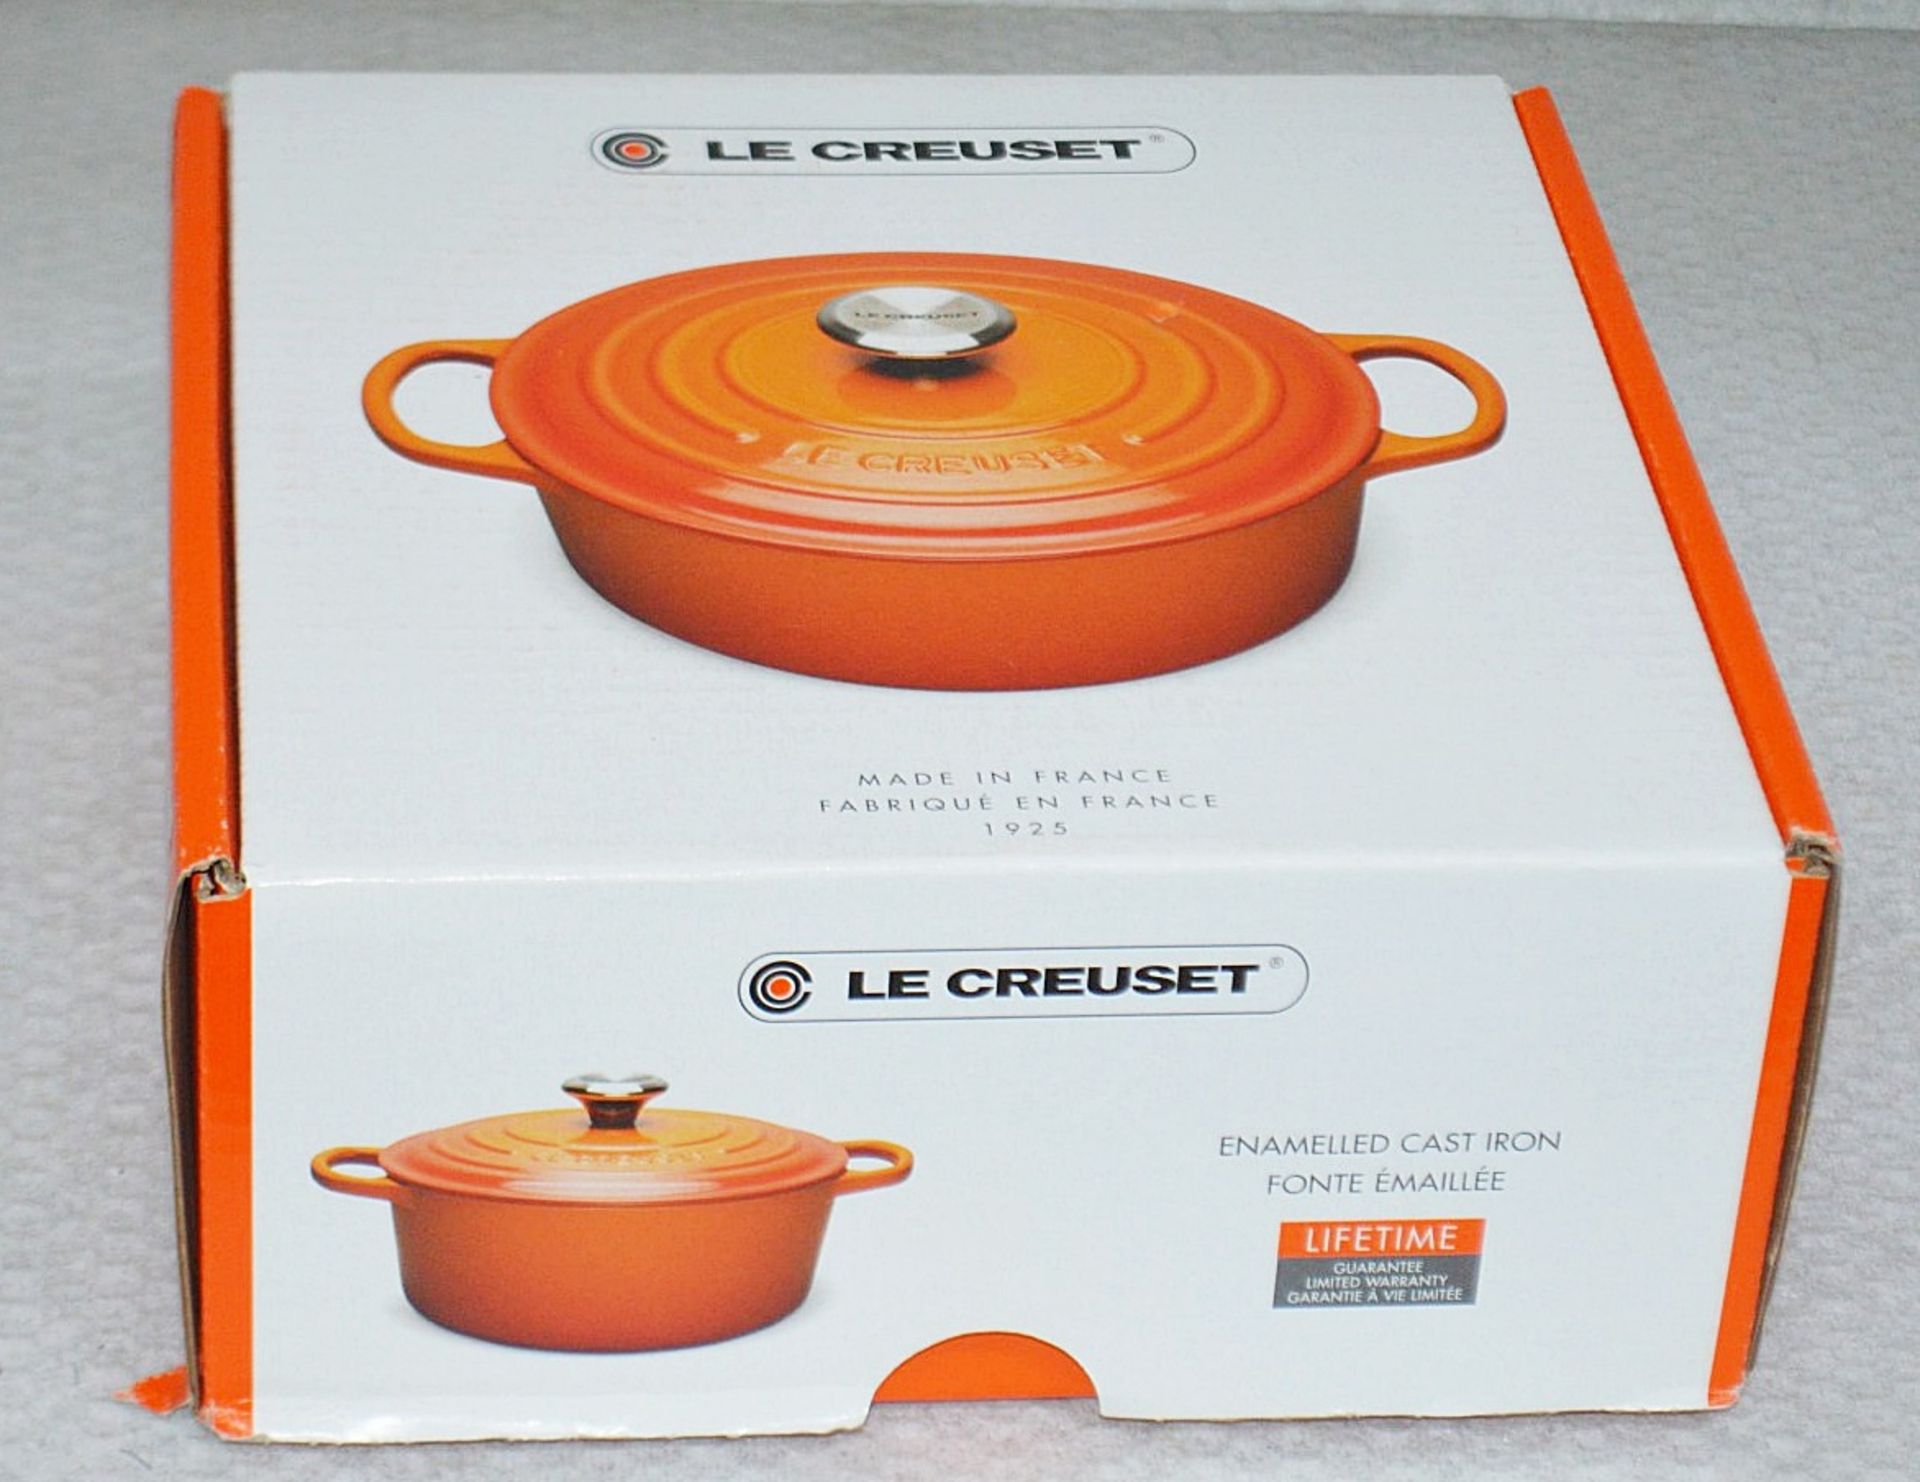 1 x LE CREUSET Signature Cast Iron Round Casserole Dish In Orange (20cm) - Original Price £200.00 - Image 2 of 7